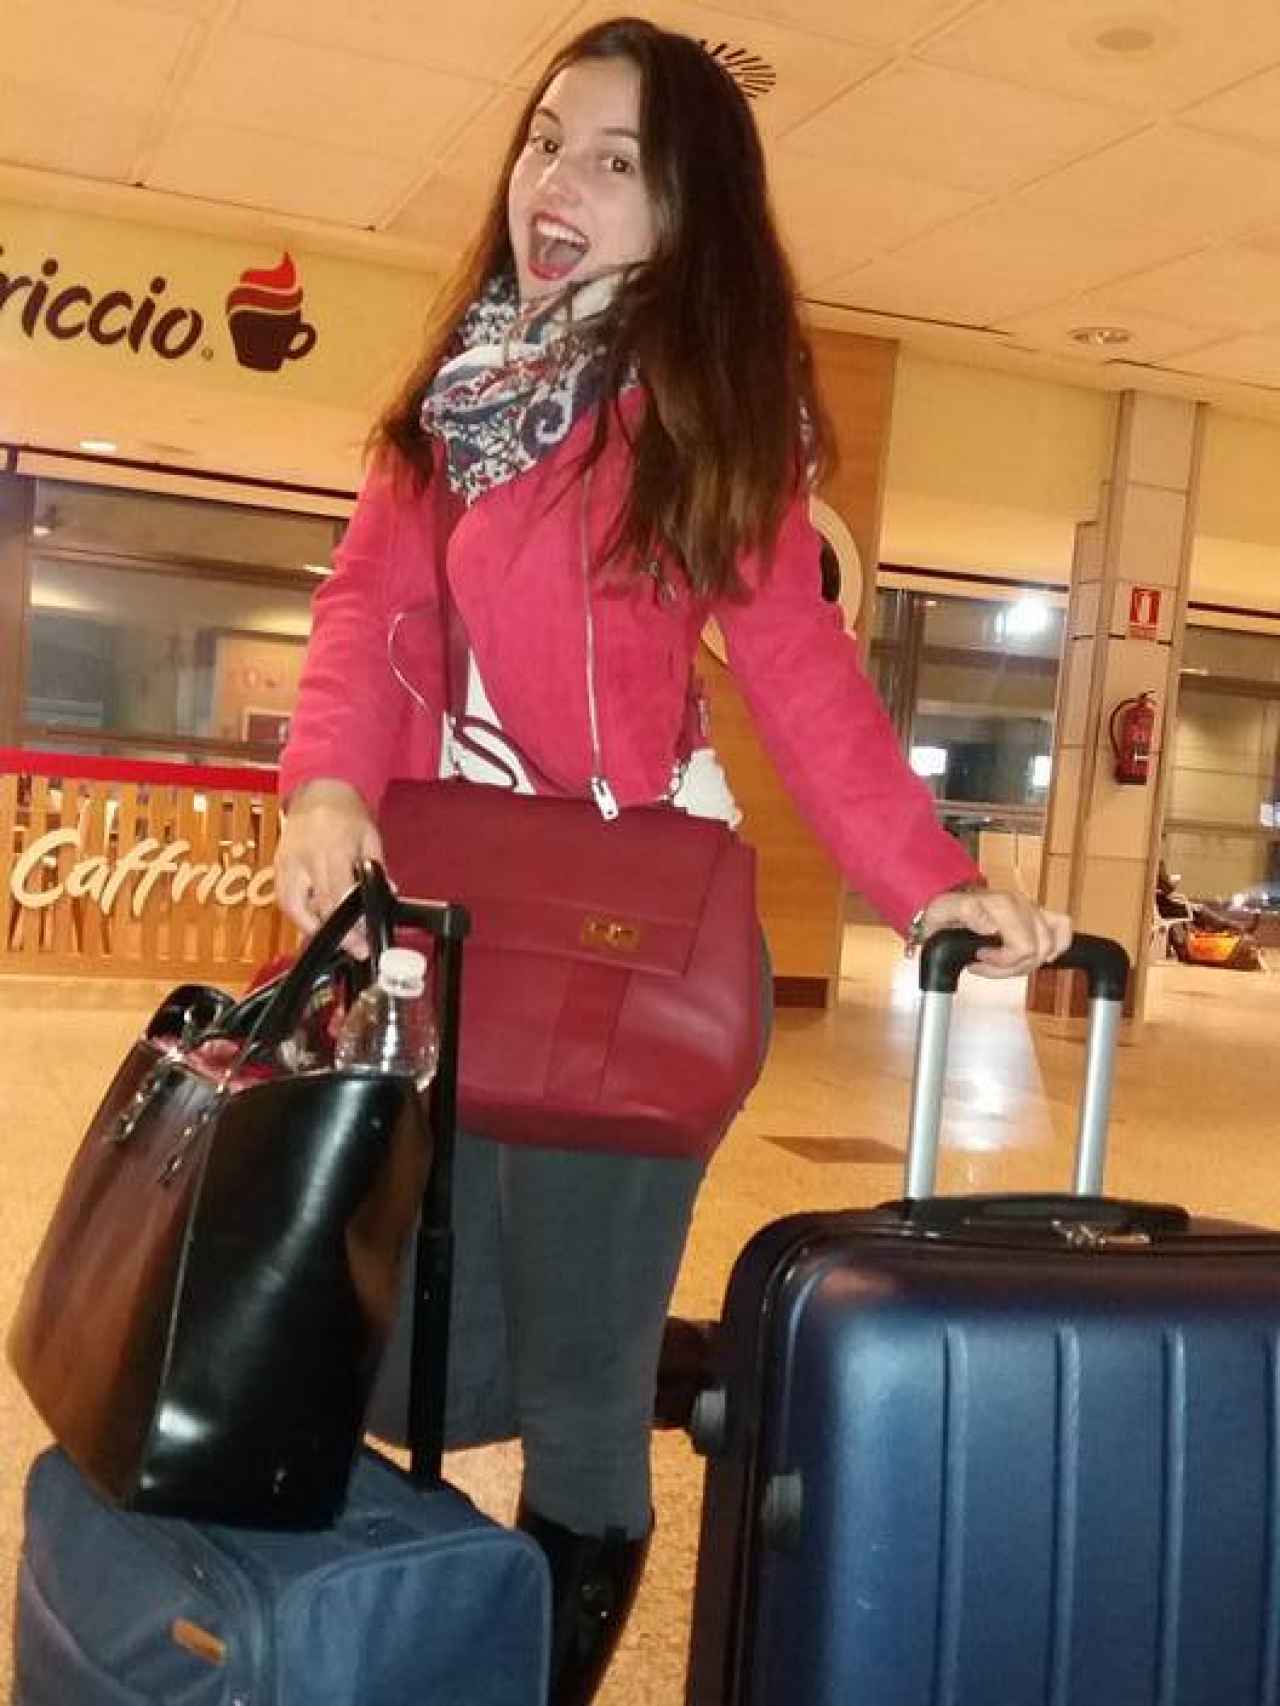 La joven, en el aeropuerto, antes de poner rumbo a Frankfurt.